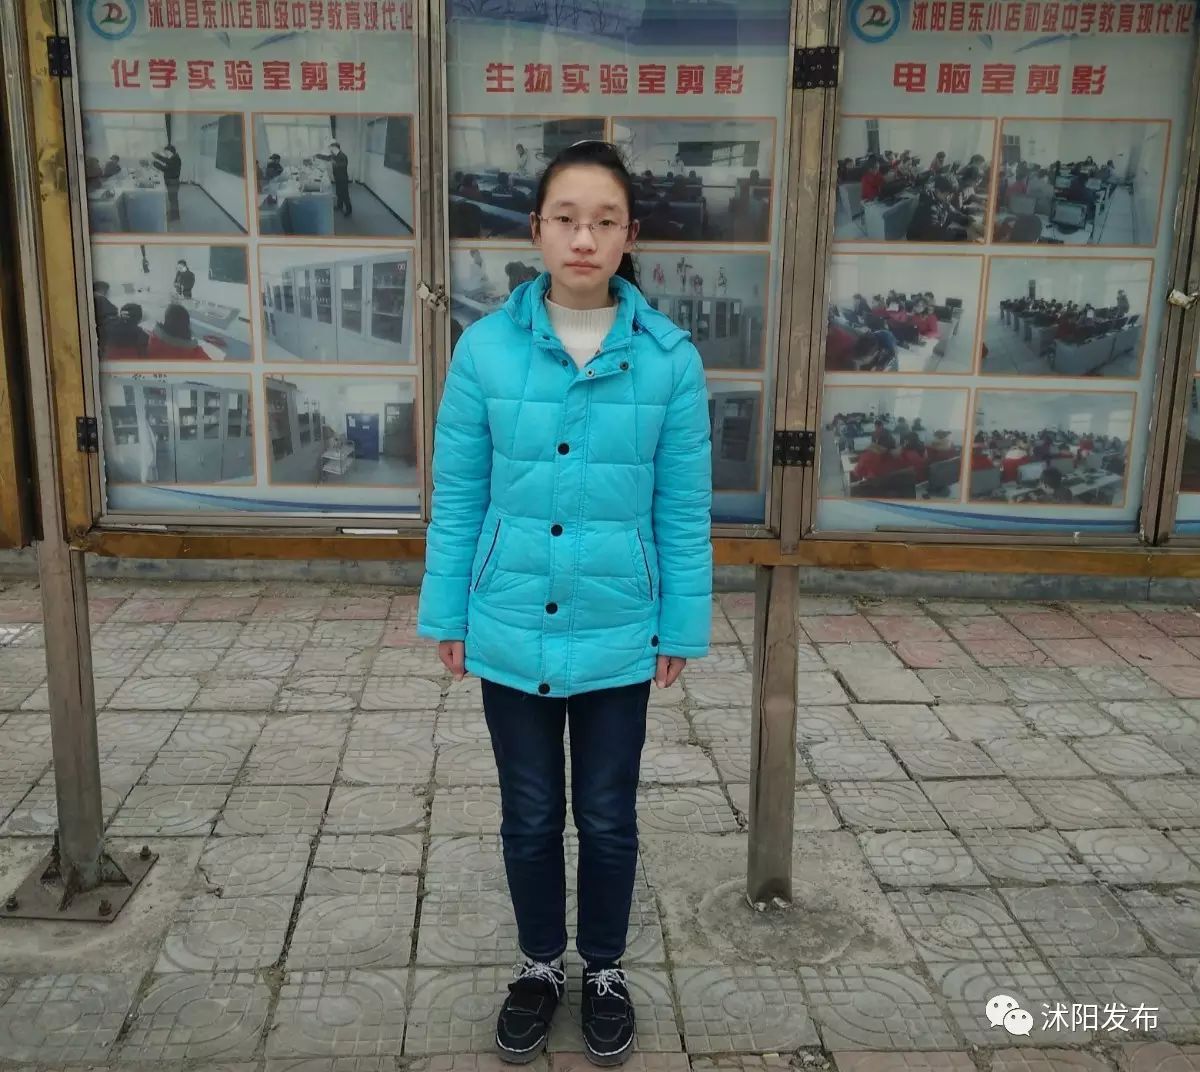 她叫王静,今年13岁,沭阳县东小店初级中学八(1)班学生.